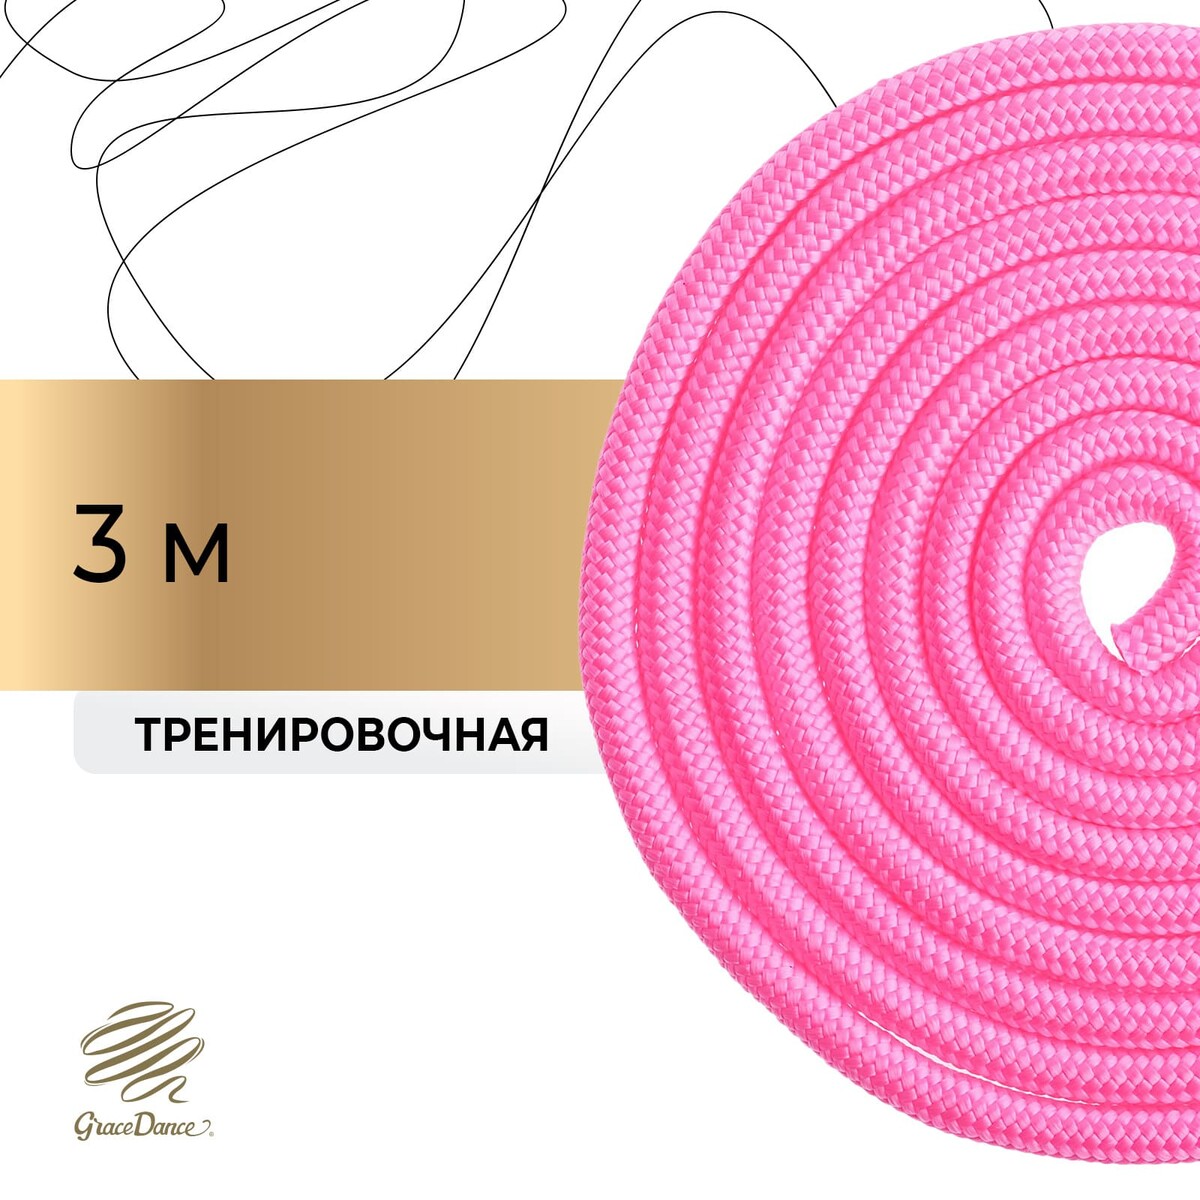 Скакалка для художественной гимнастики grace dance, 3 м, цвет розовый скакалка гимнастическая с люрексом body form bf sk03 bf jrgl01 2 5м 150гр розовый